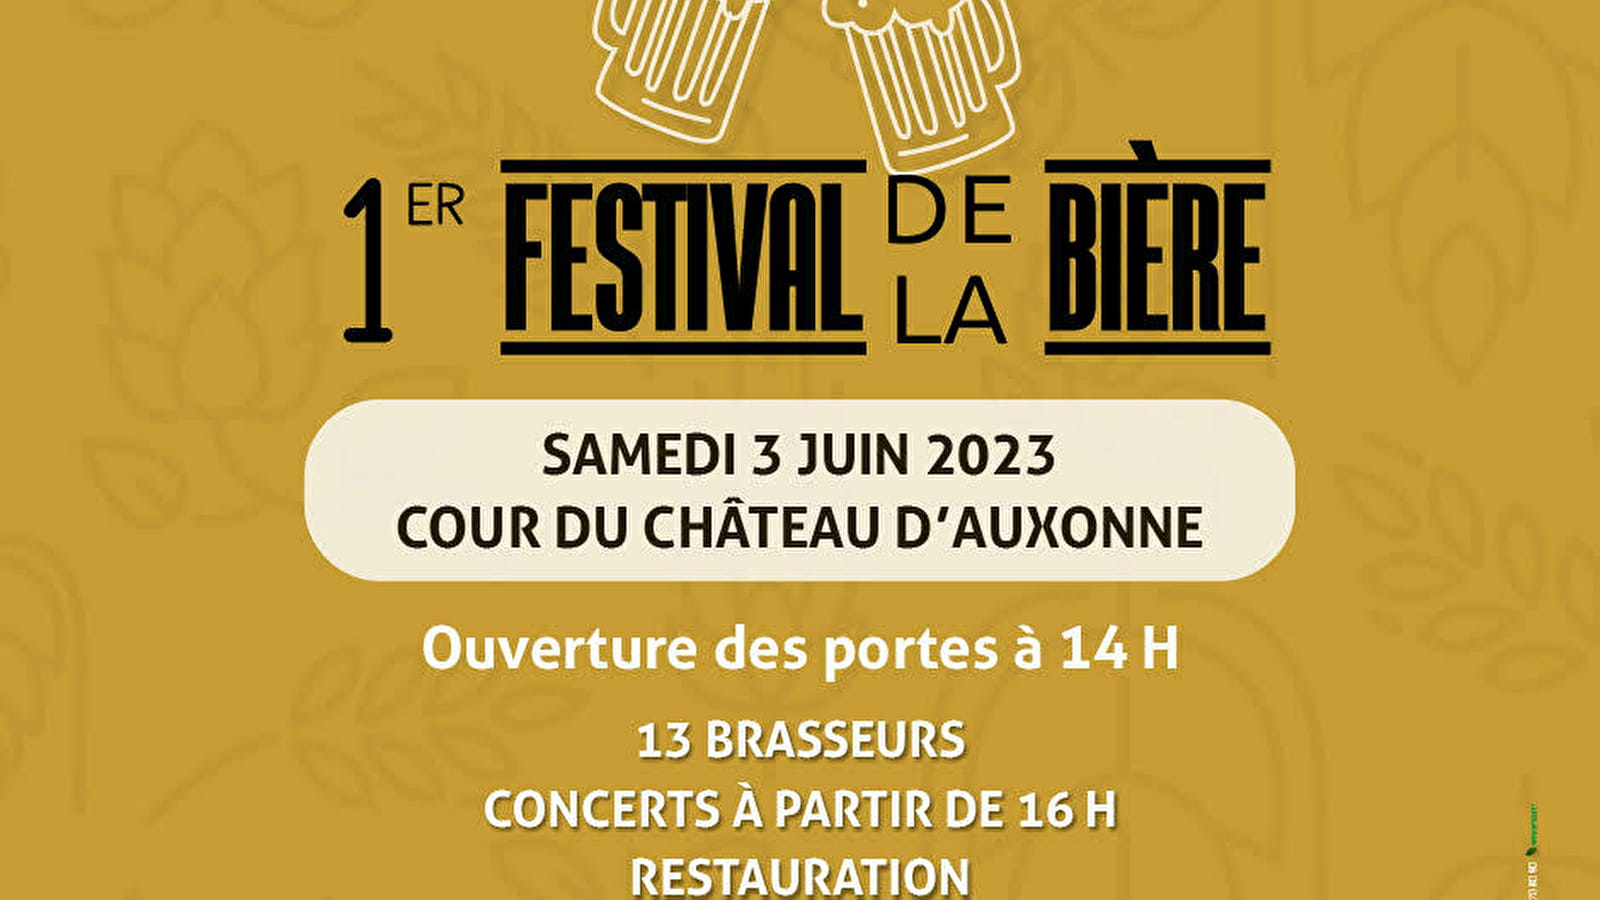 Festival de la bière